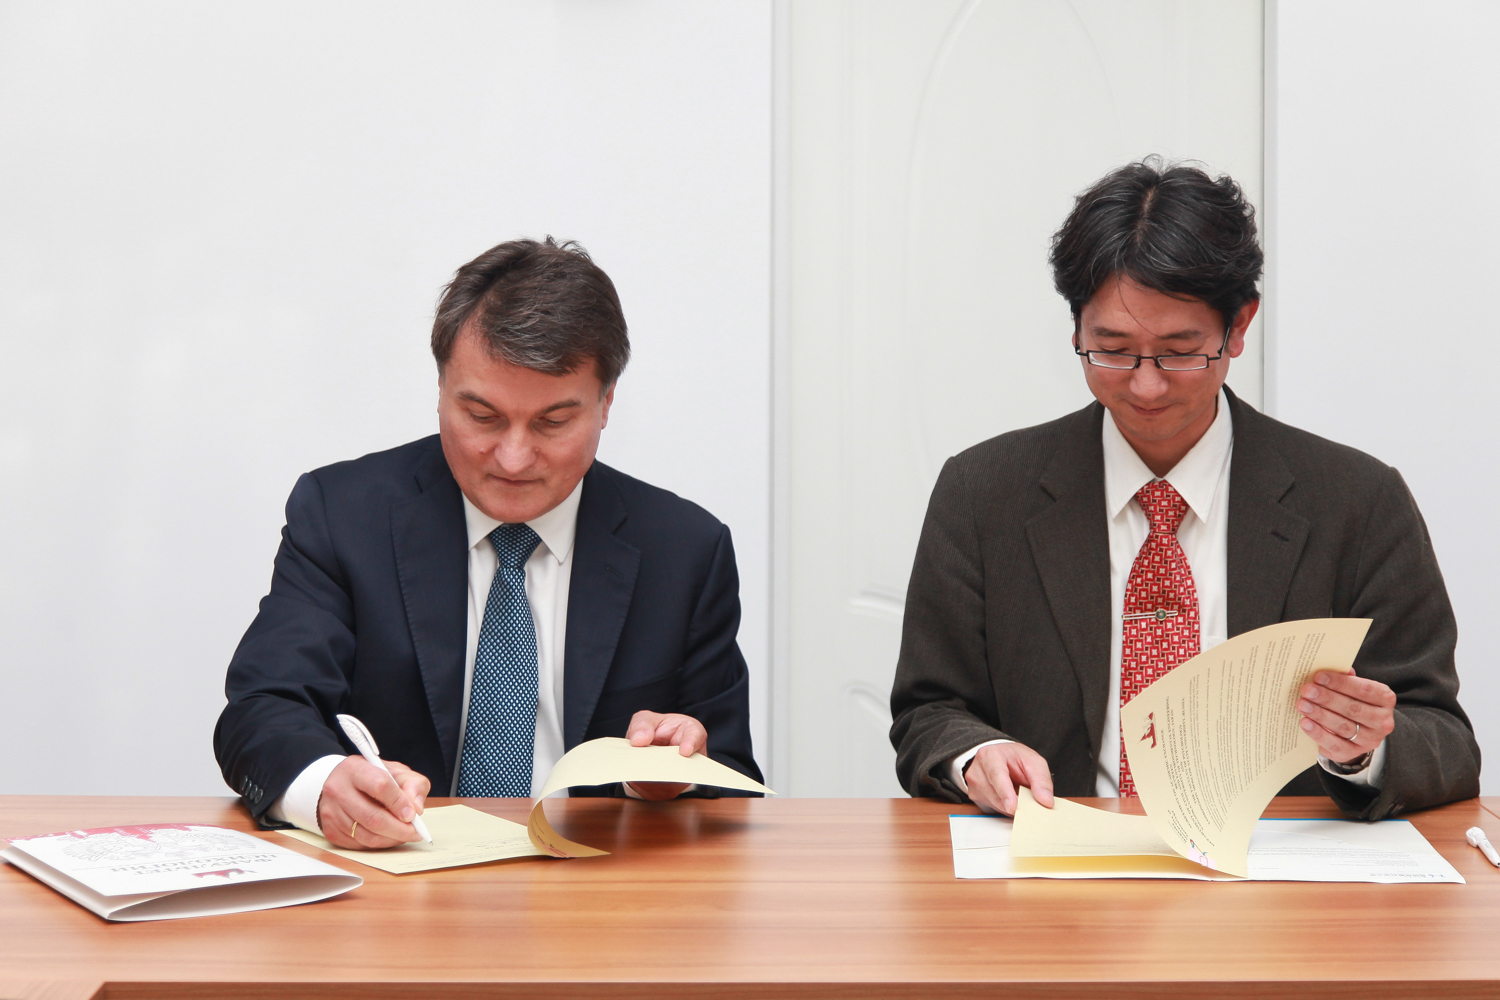 Подписано соглашение об академическом обмене между Технологическим университетом г. Нагаока и факультетом психологии МГУ